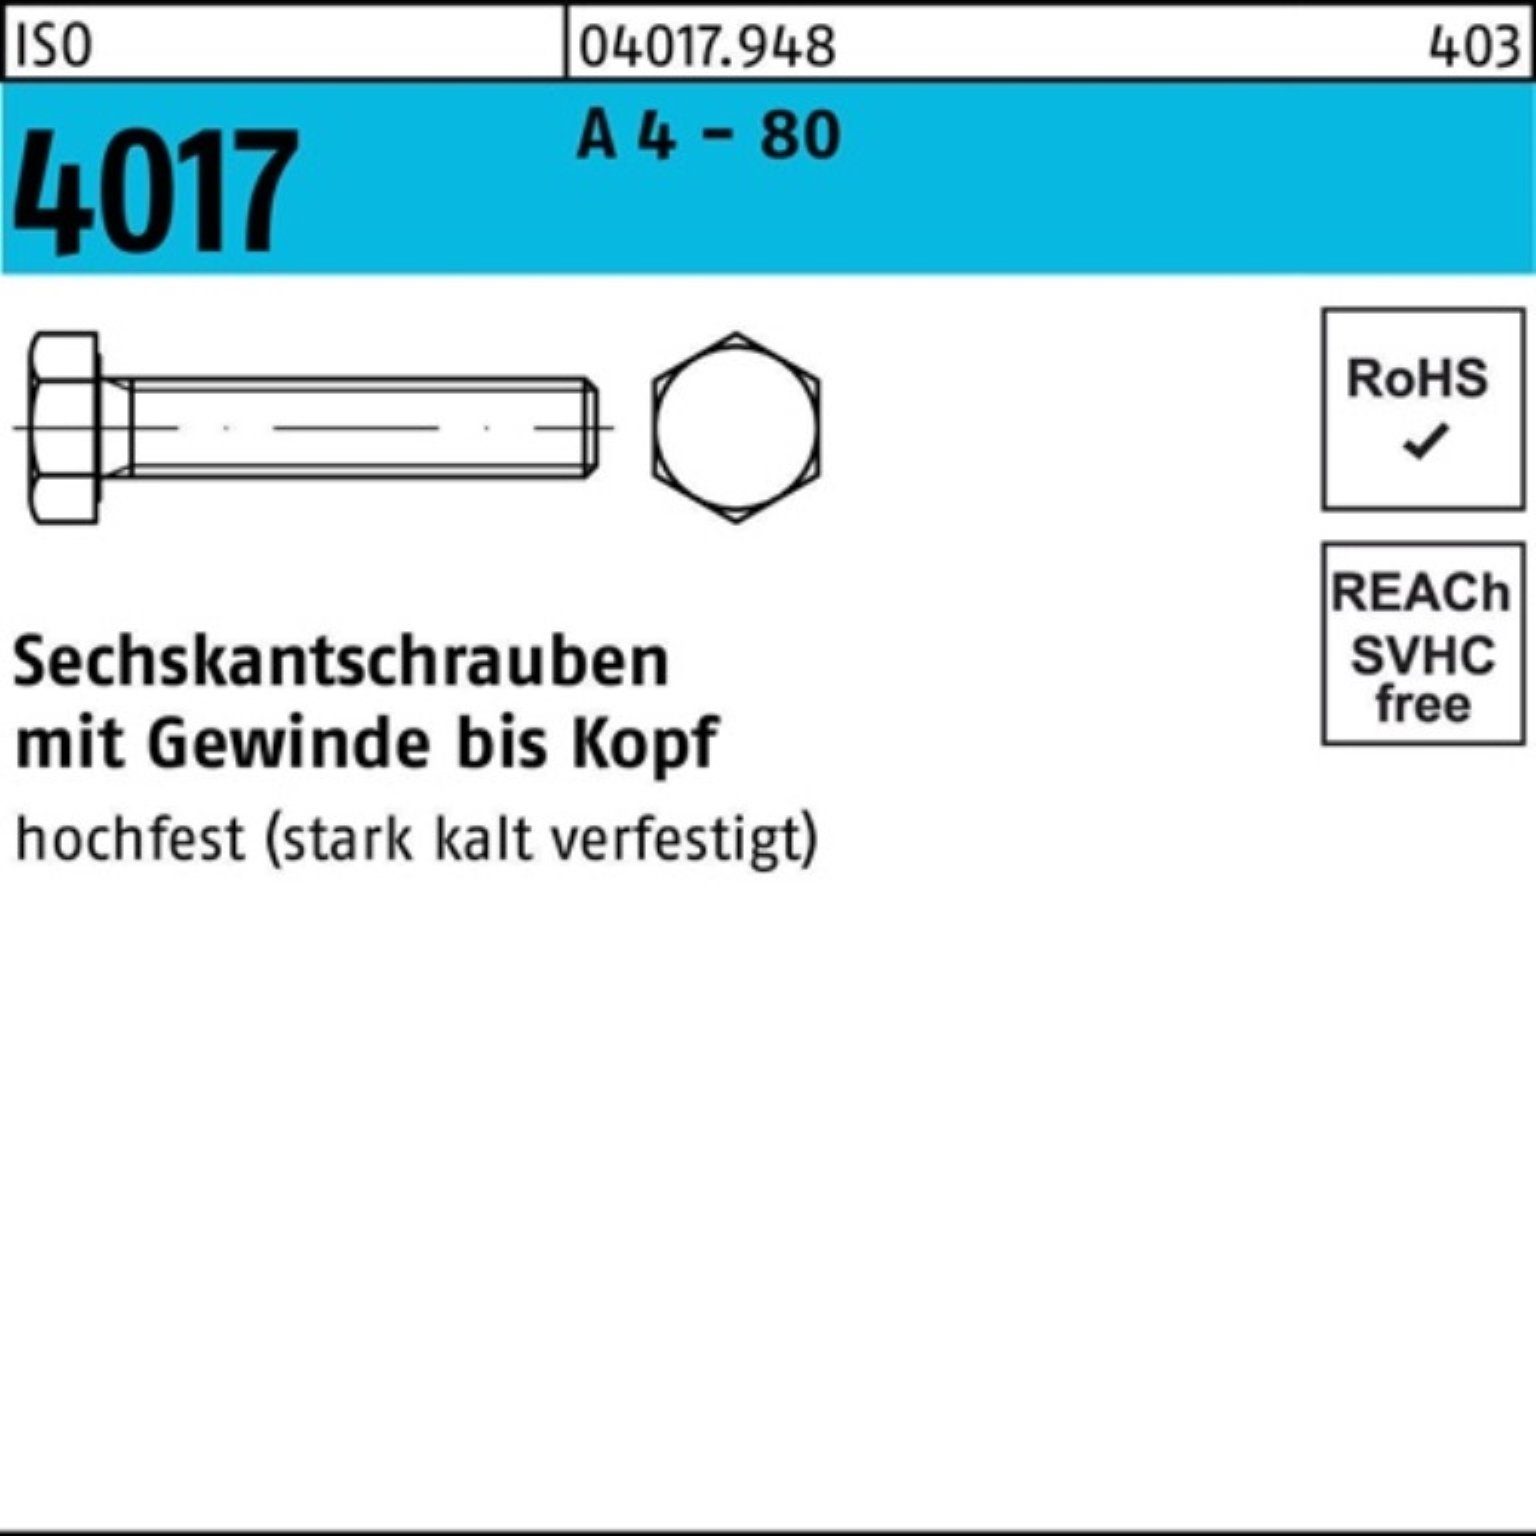 Top-Service Bufab Sechskantschraube 100er Pack Stück 80 M14x VG 4017 4 1 ISO ISO 80 A - Sechskantschraube